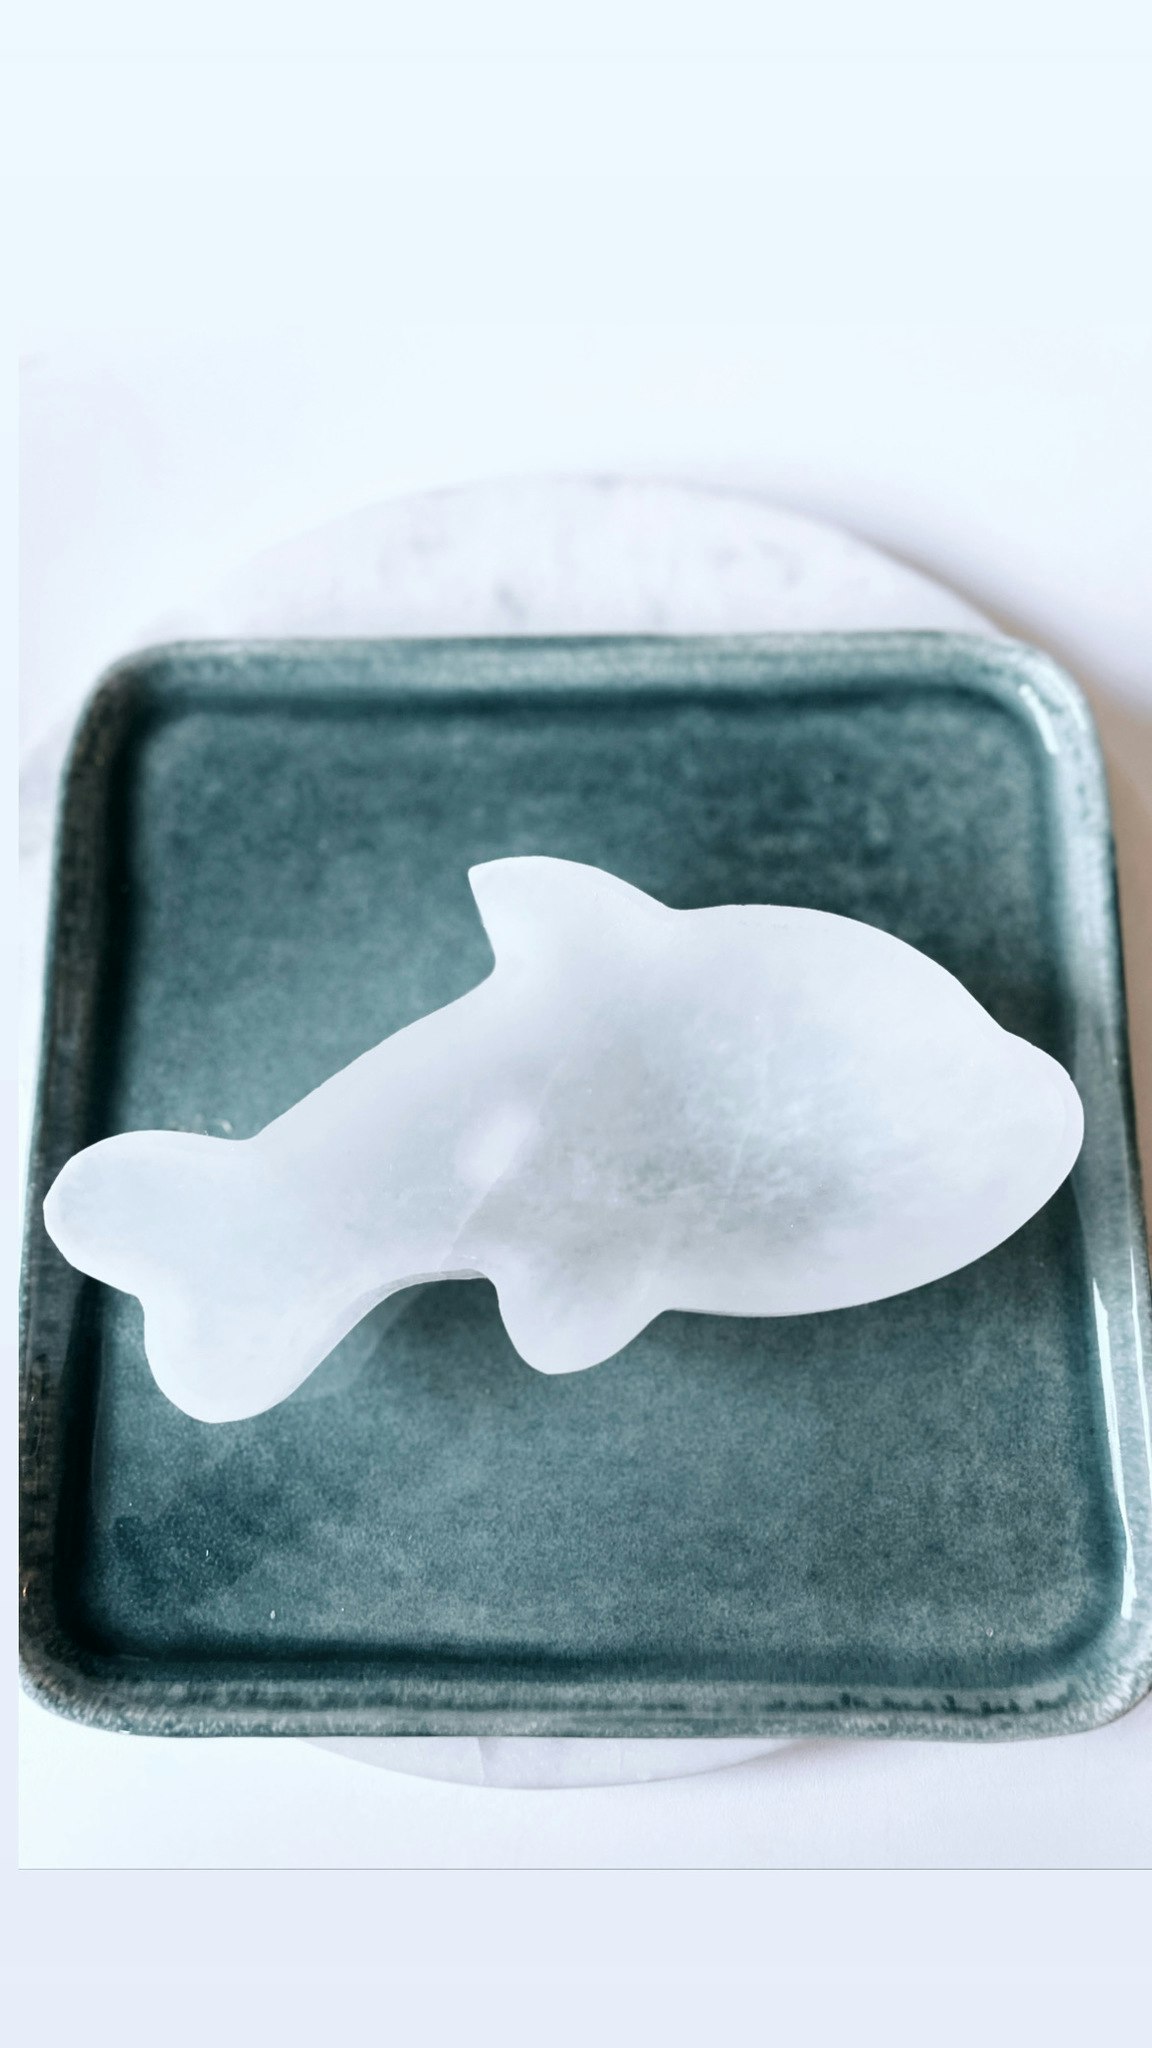 Selenit, skål i form av delfin